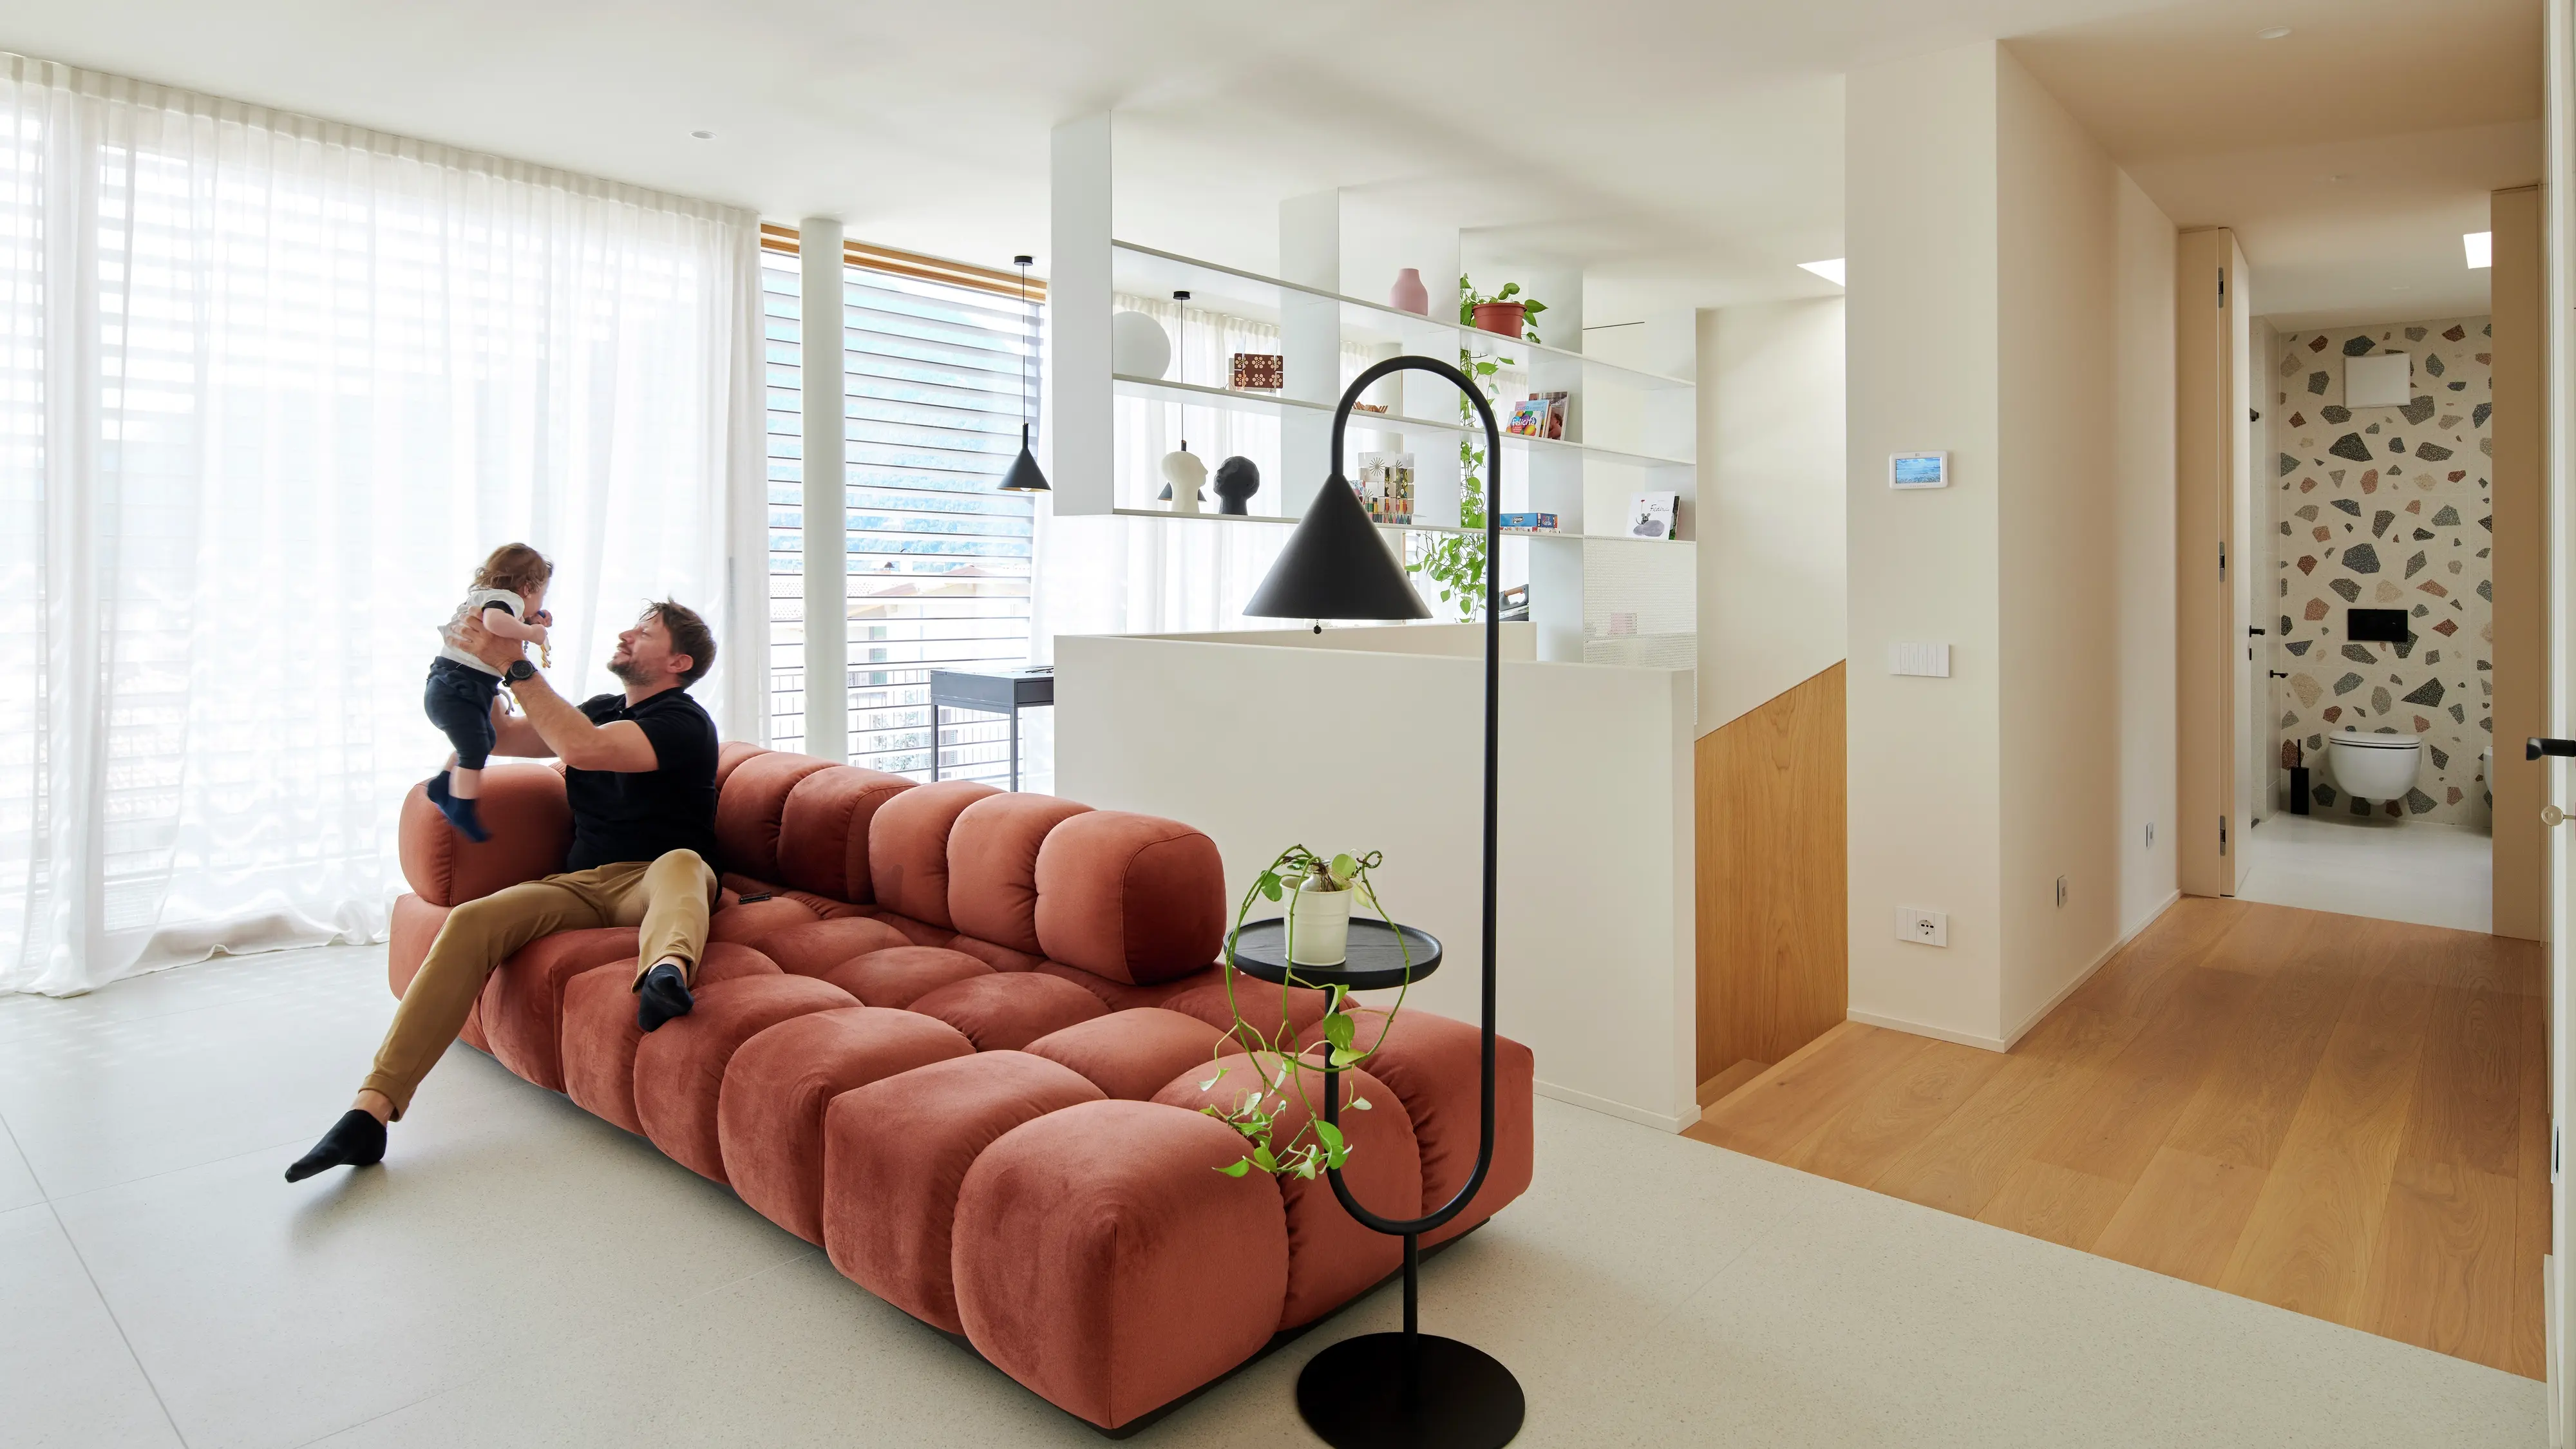 Salon moderne avec canapé en terre cuite, lampe noire, étagères ouvertes et salle de bain en terrazzo.